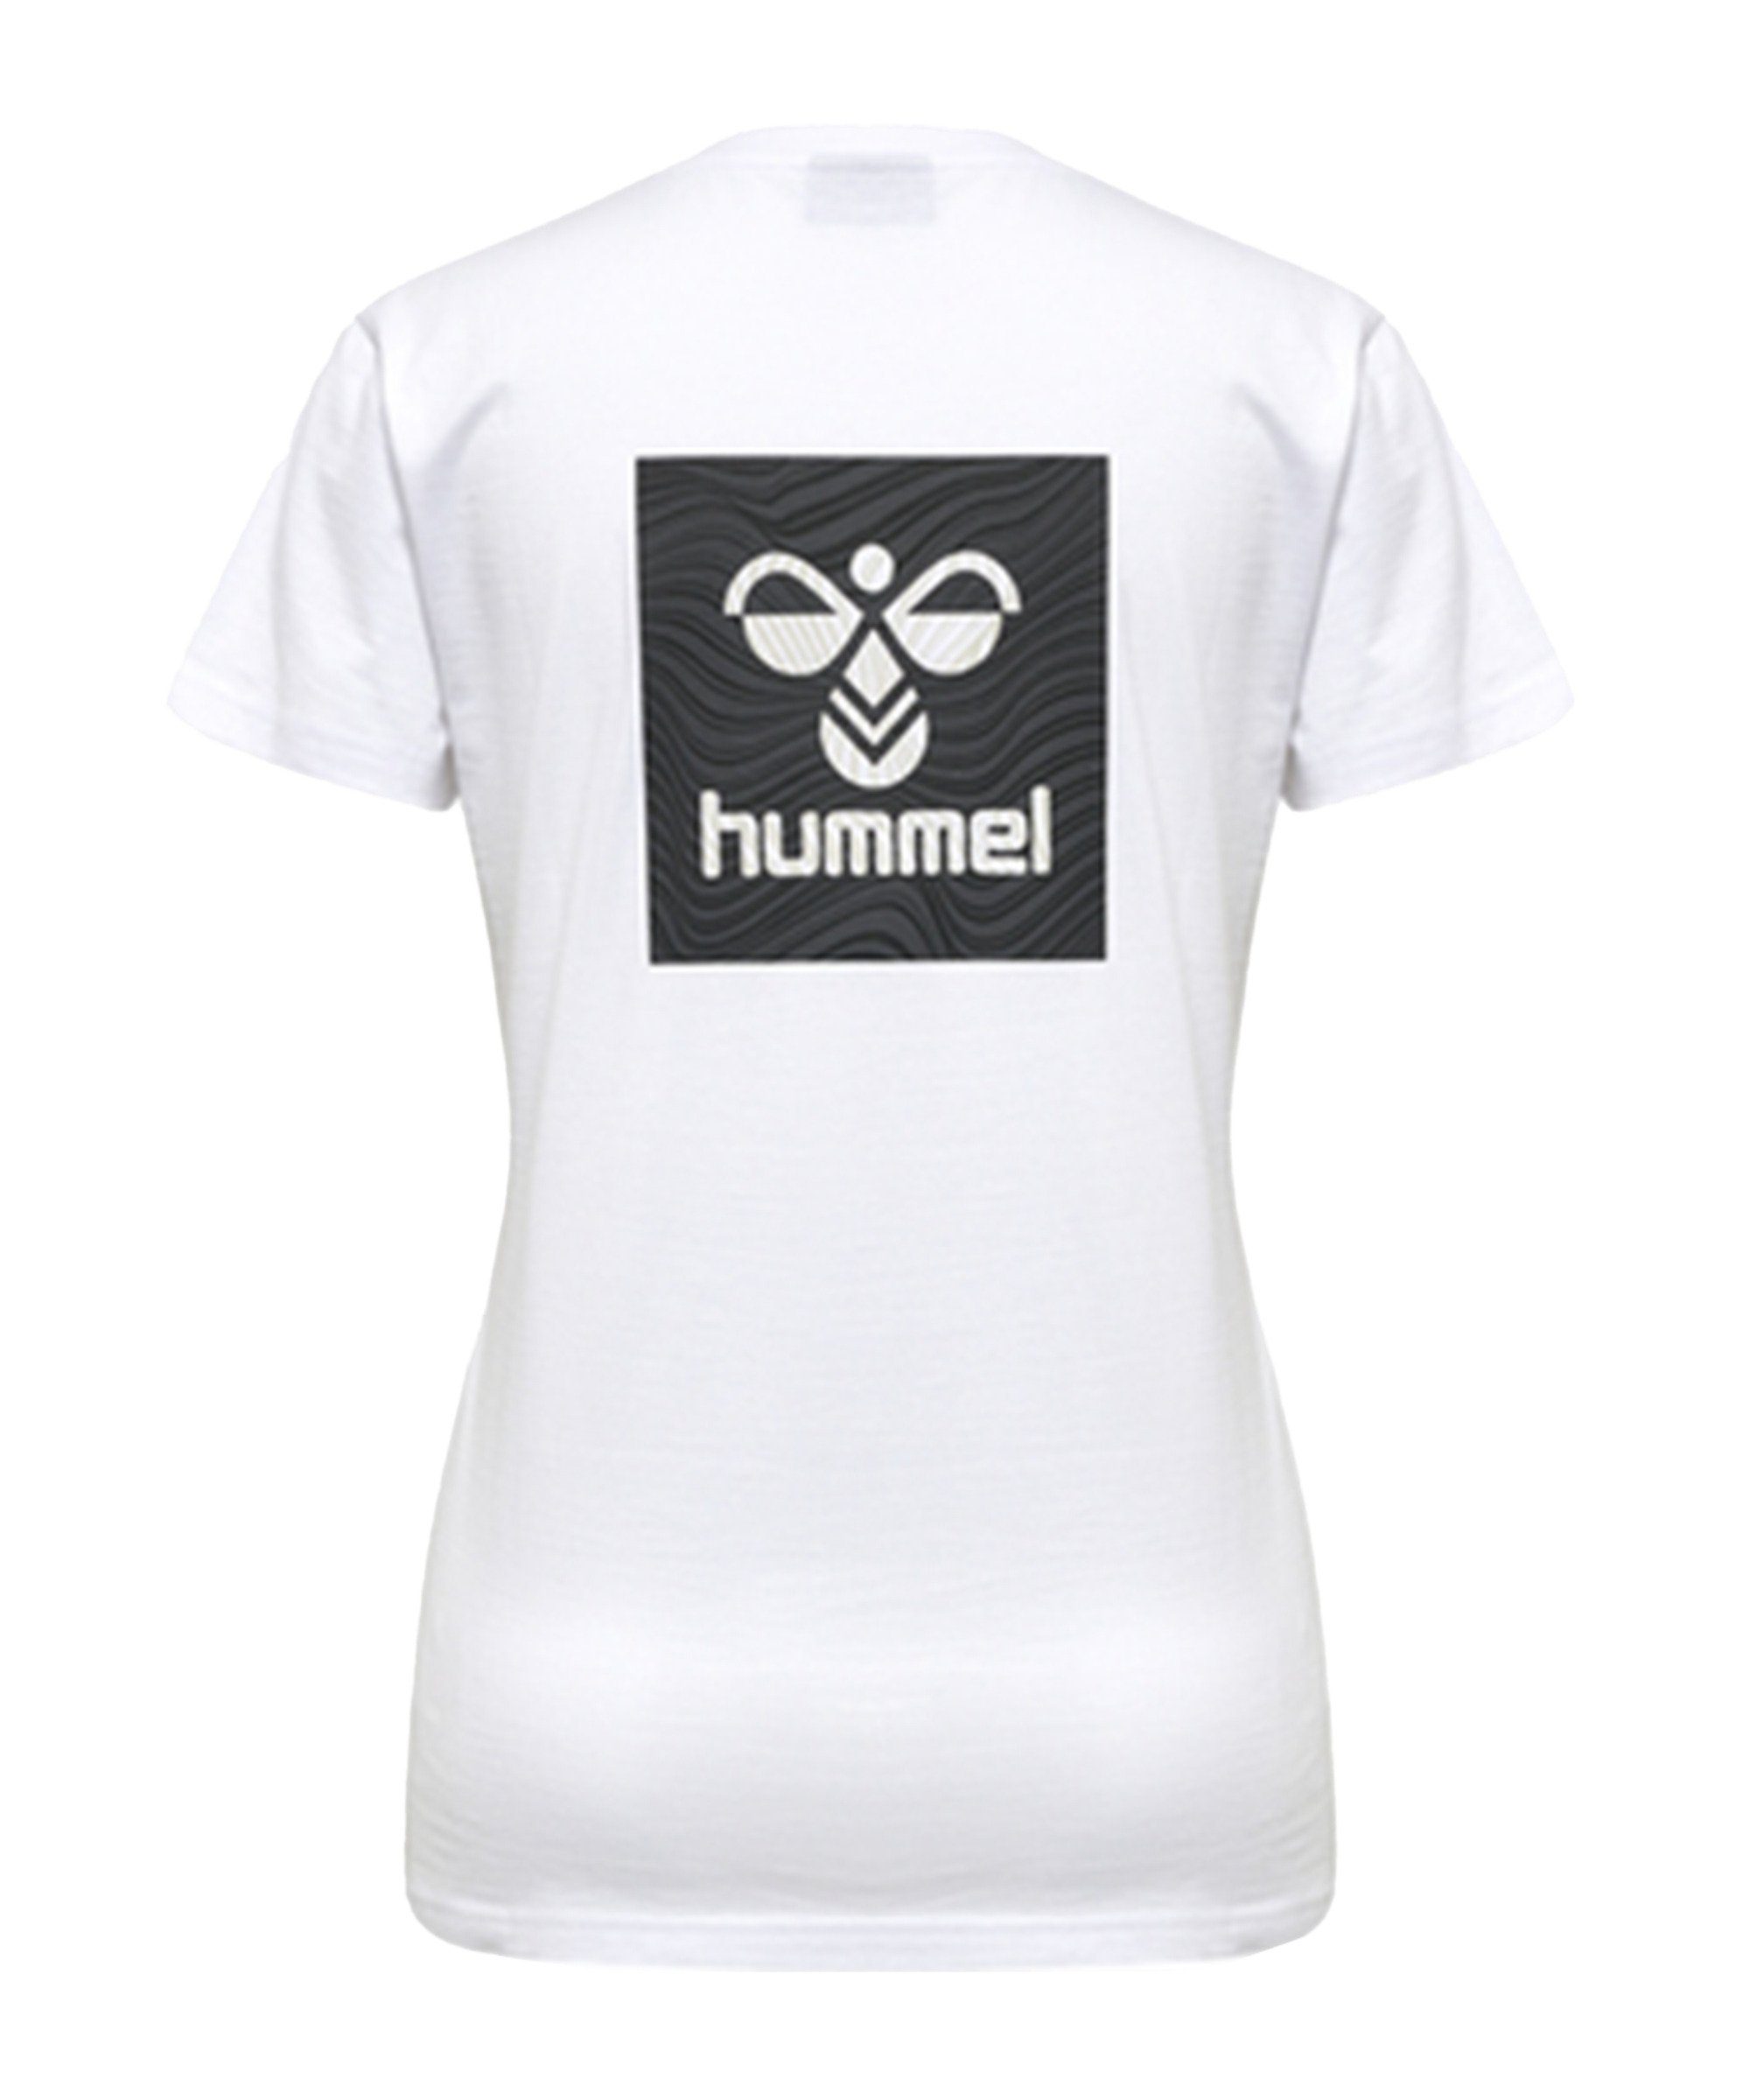 hmlOFFGRID hummel T-Shirt weissgrau default T-Shirt Damen